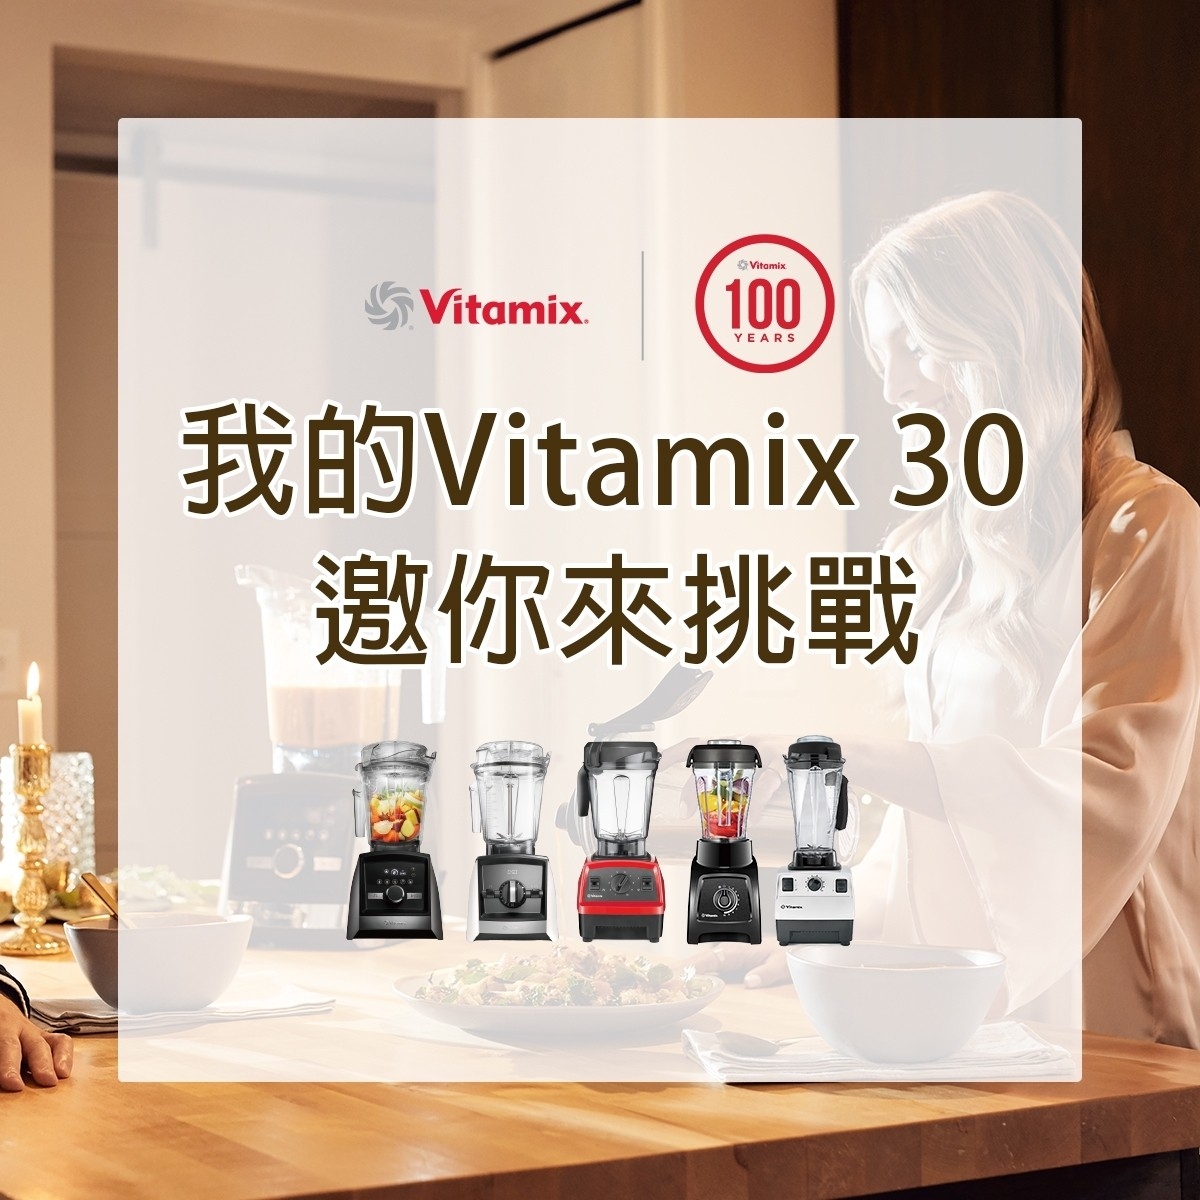 Vitamix調理機-陳月卿-甜點-冰沙-冰淇淋-綠拿鐵-濃湯-芝麻醬-精力湯-Vitamix 30日料理挑戰賽